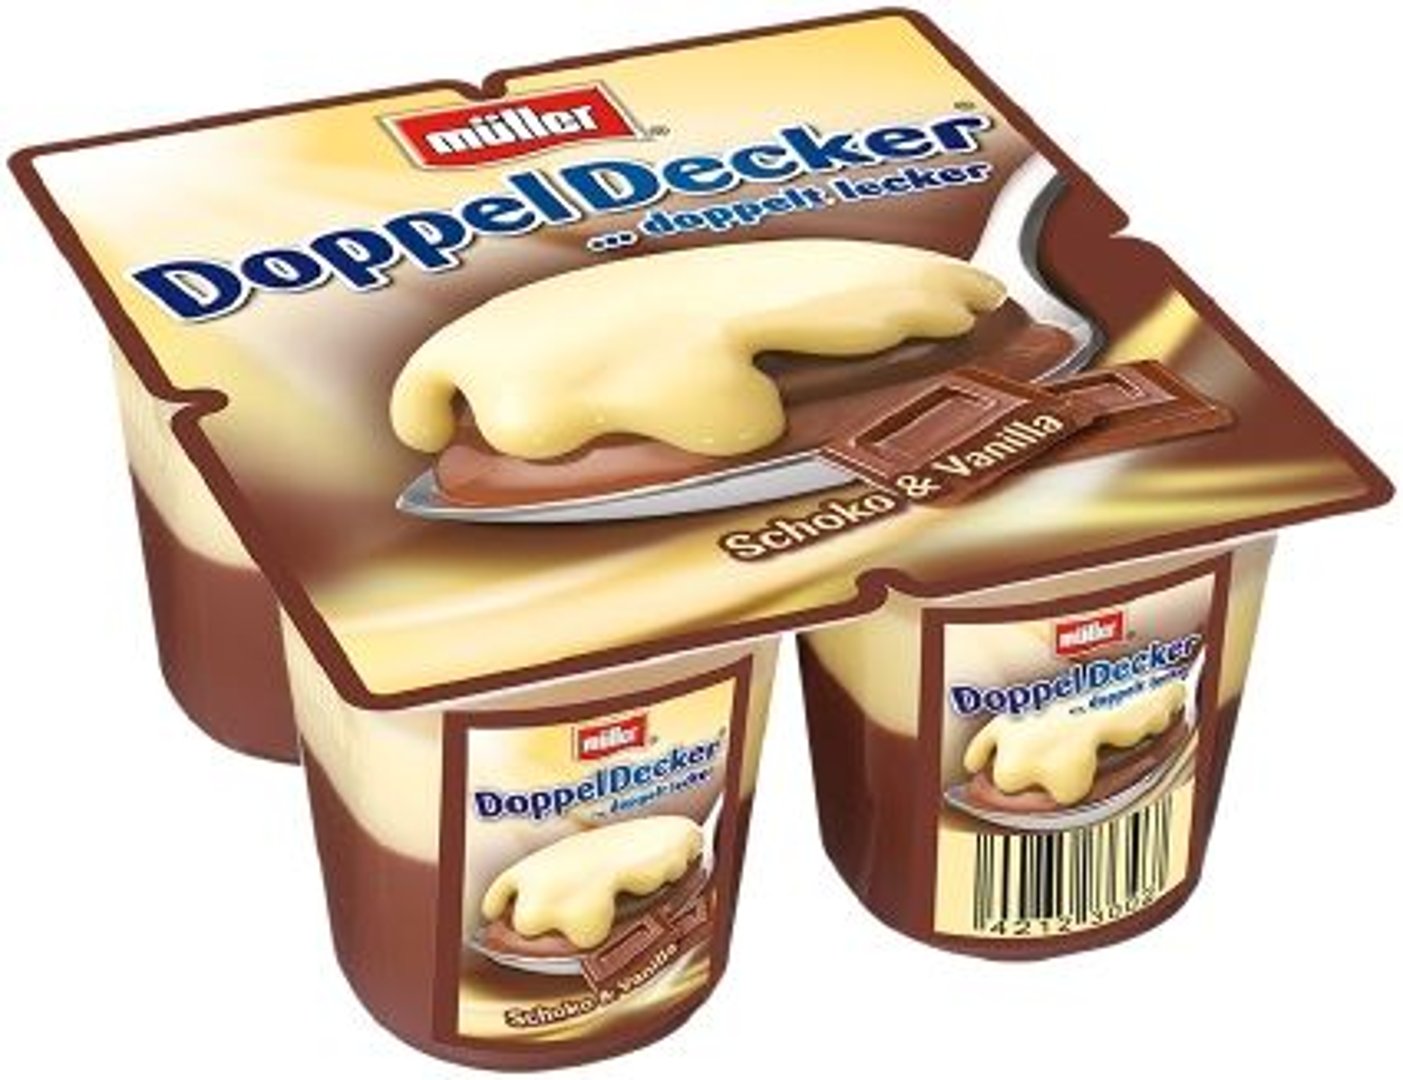 müller - Doppeldecker Pudding Schoko mit Vanillesauce 4 Päckchen je 125 g 500 g Packung